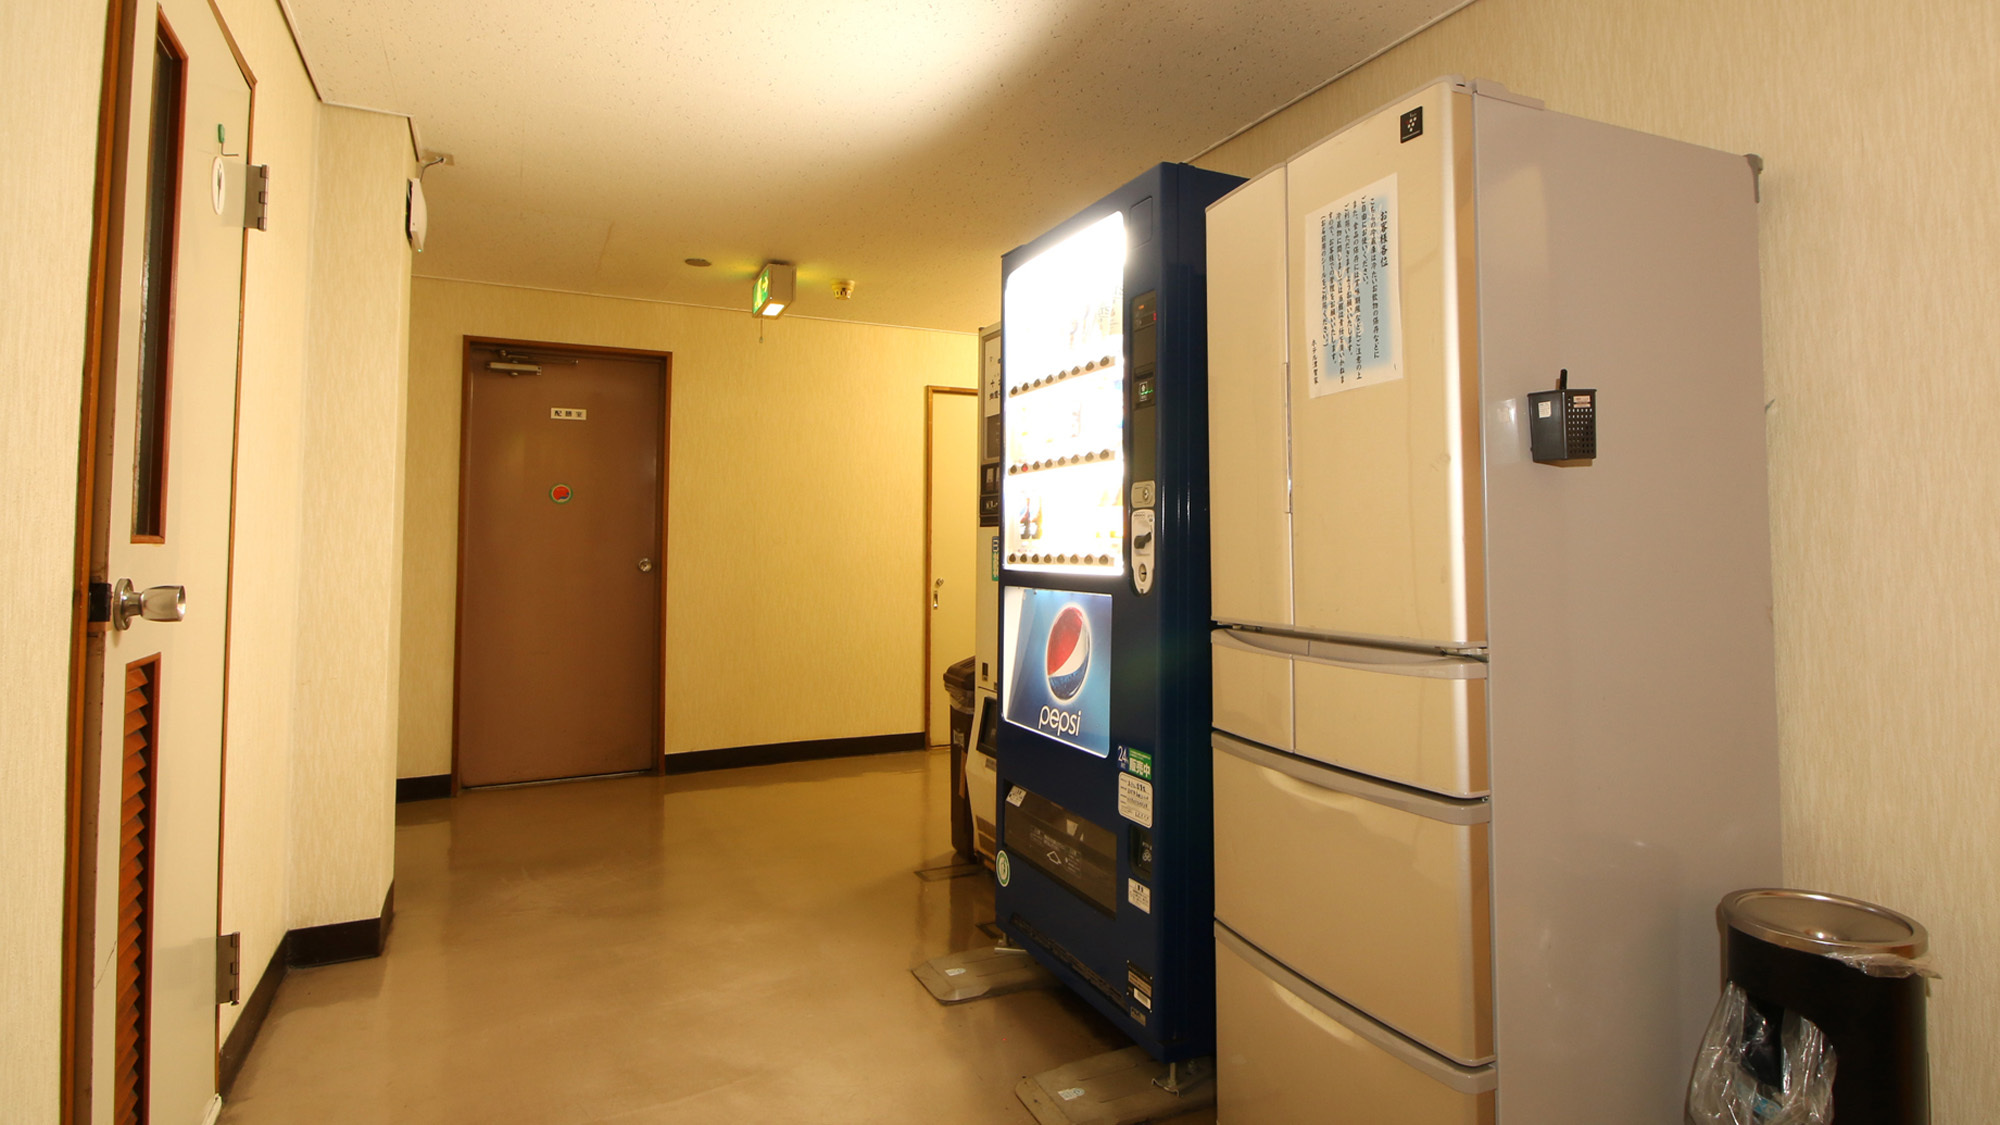 #館内には自販機や共同の大型冷蔵庫完備